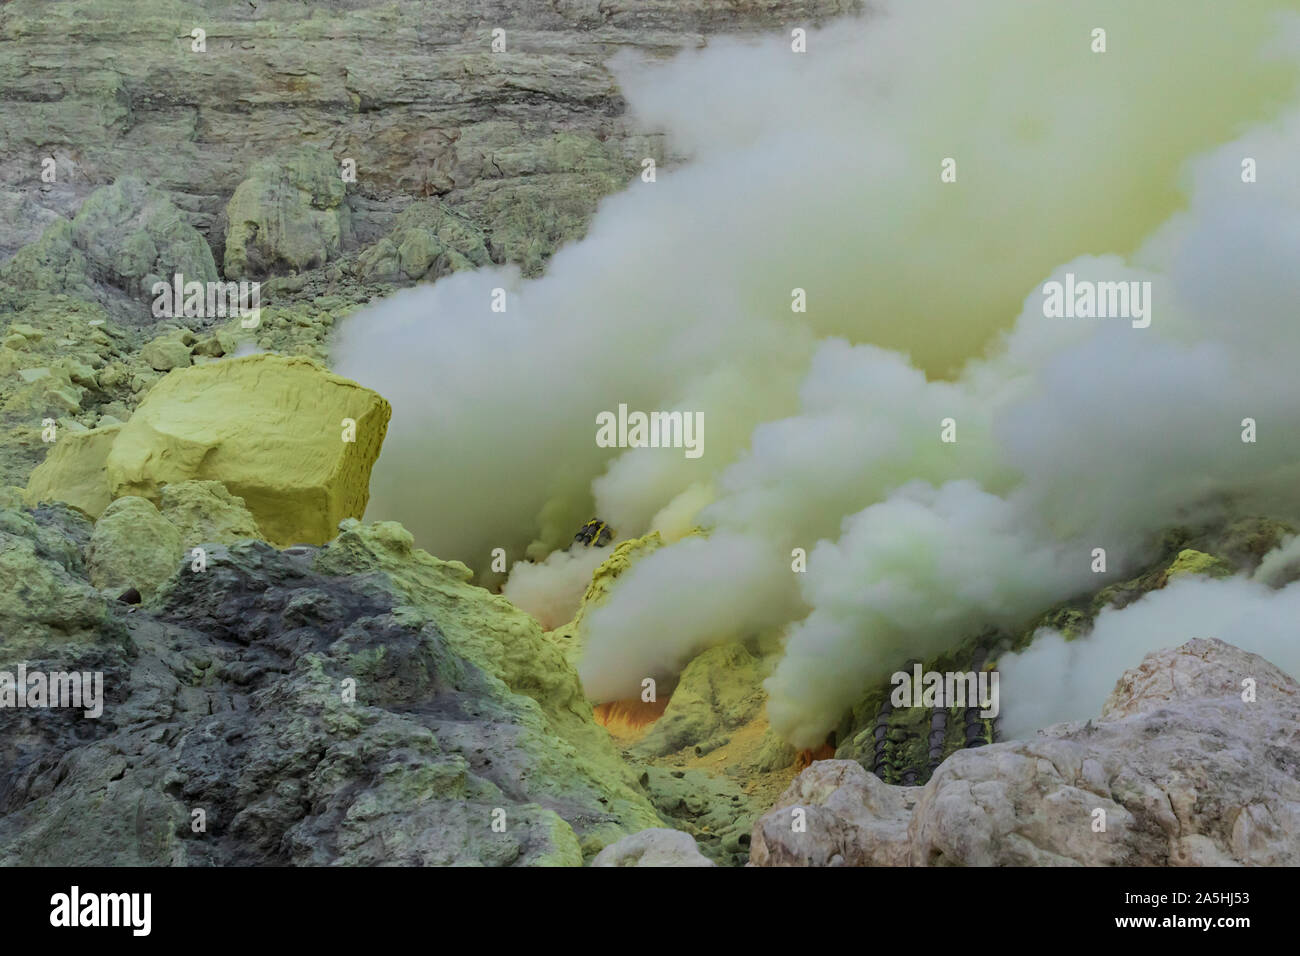 Fumo spesso sorge dalle bocche vulcaniche dentro il cratere del monte Vulcano Ijen, Java Orientale, Indonesia. Giallo zolfo nelle vicinanze. Foto Stock